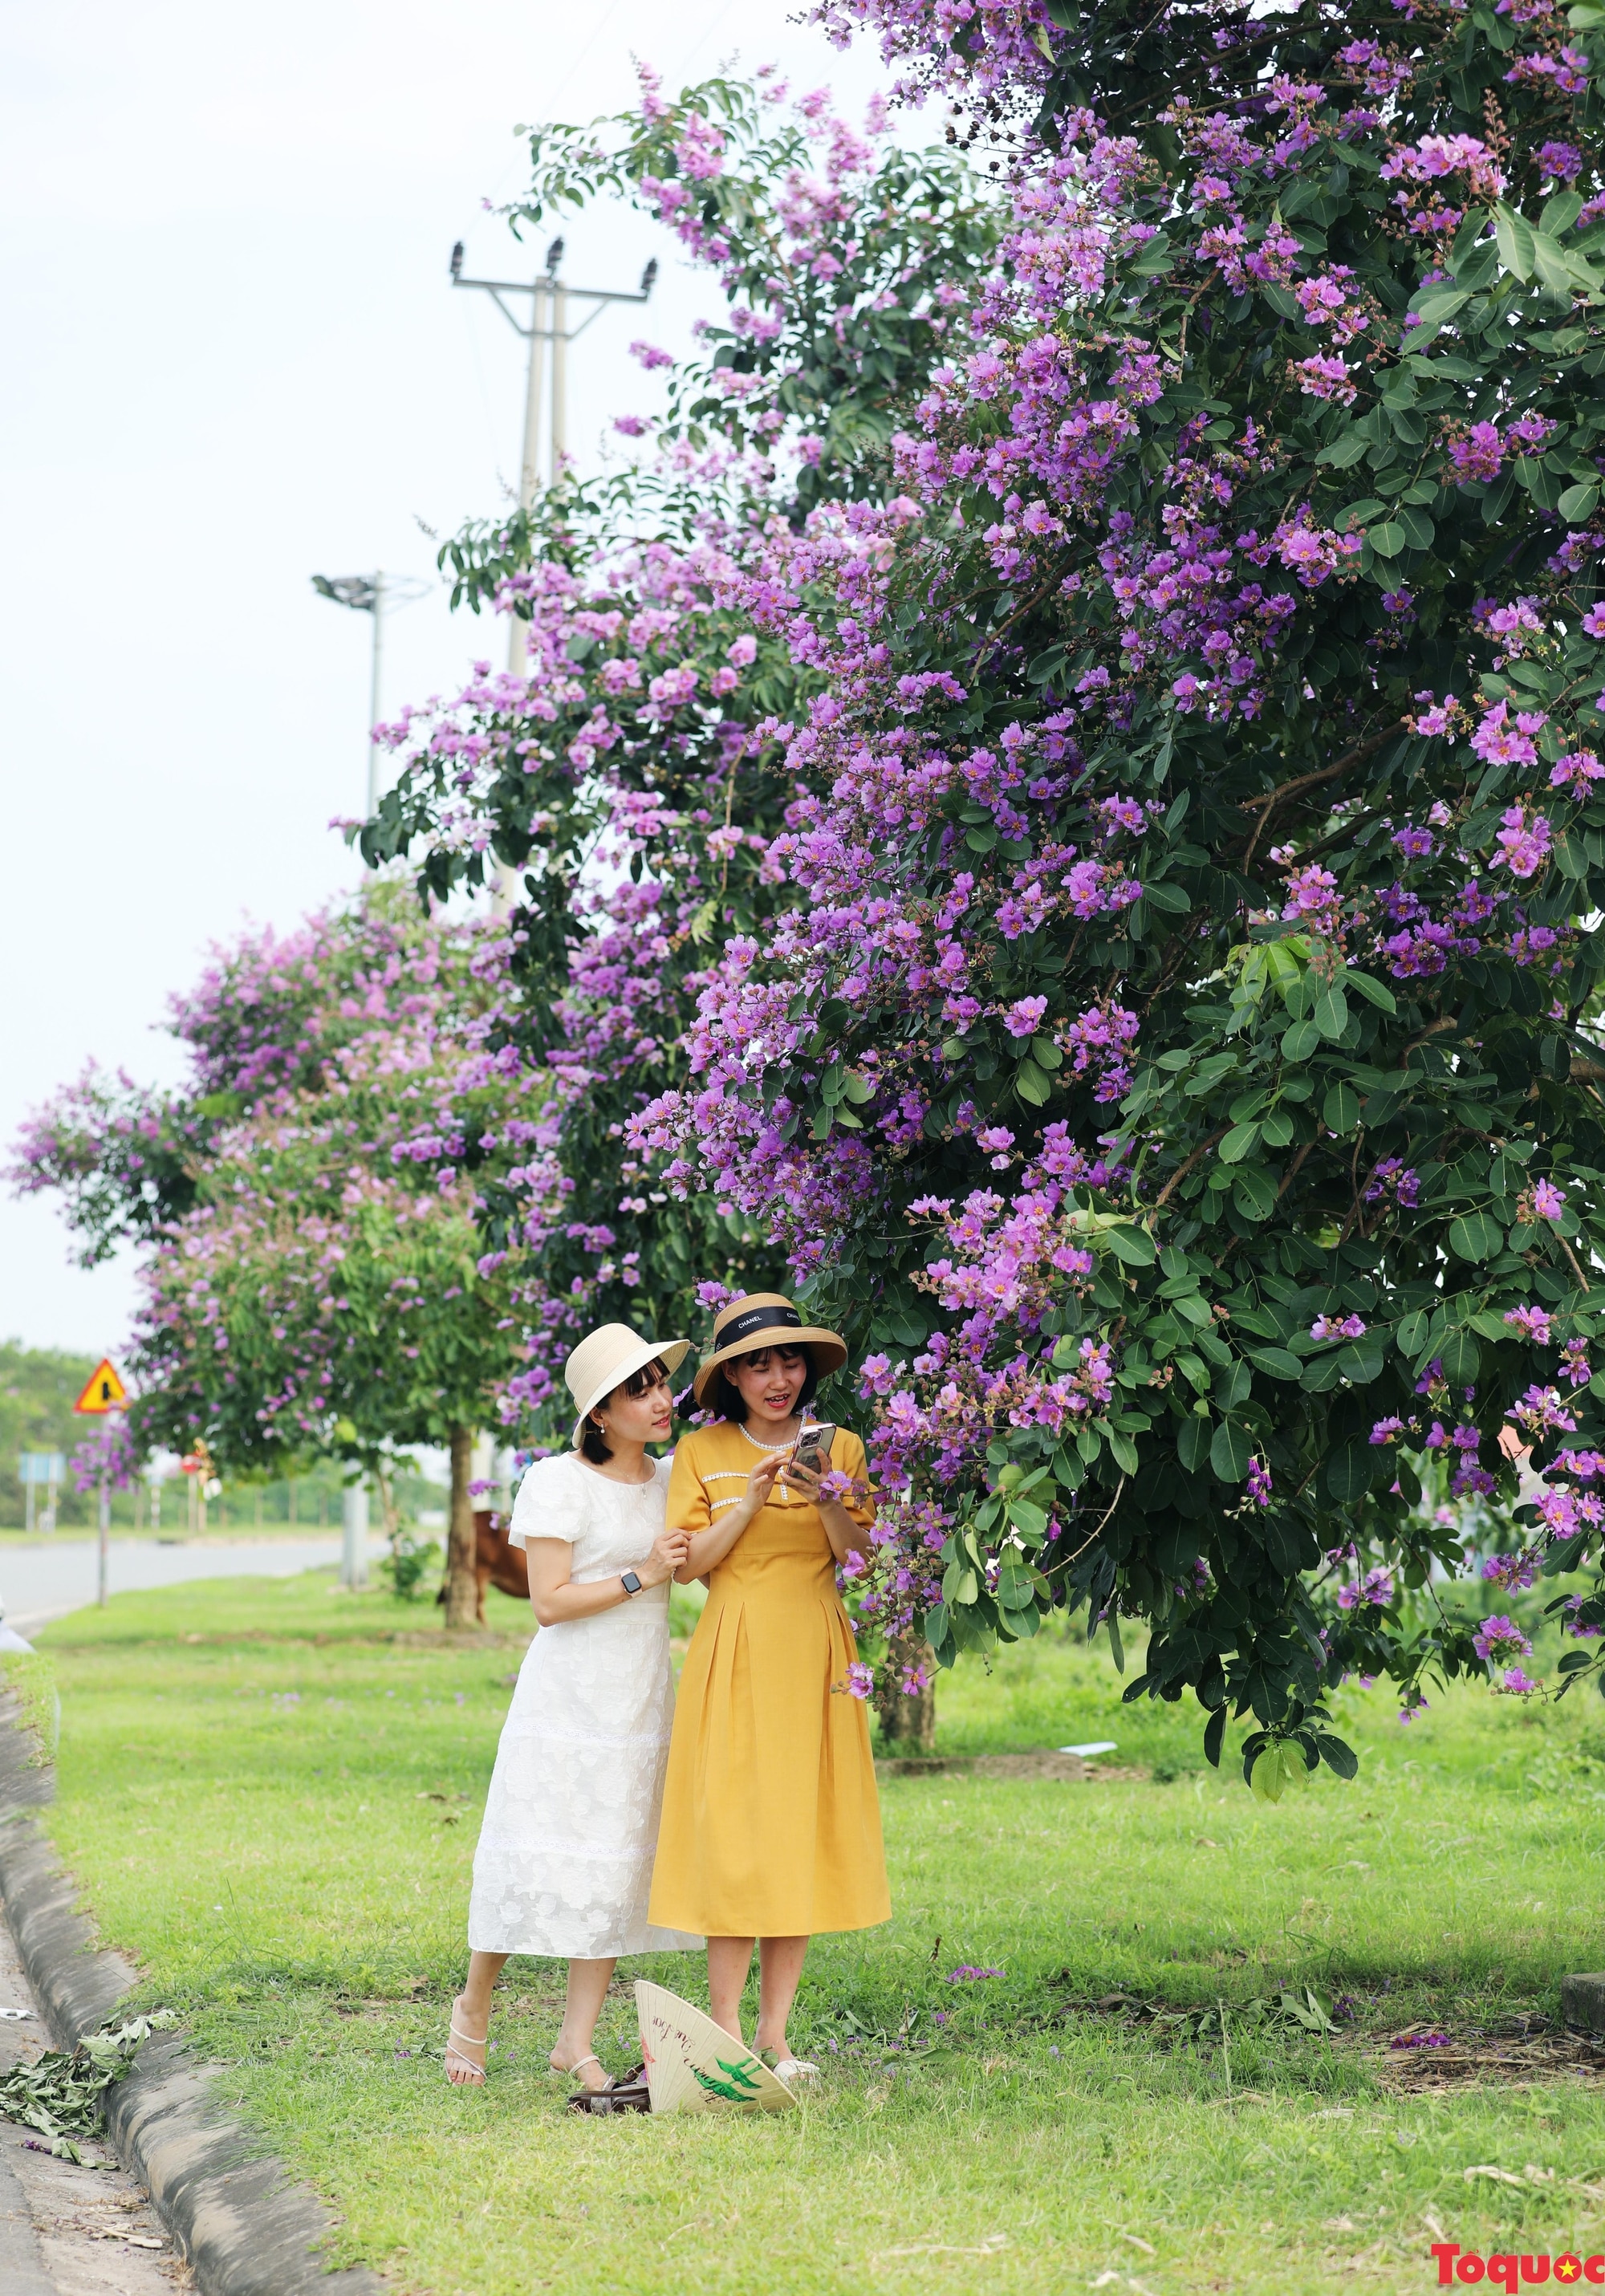 Gợi ý điểm check-in hoa bằng lăng ở Phú Thọ - Ảnh 7.